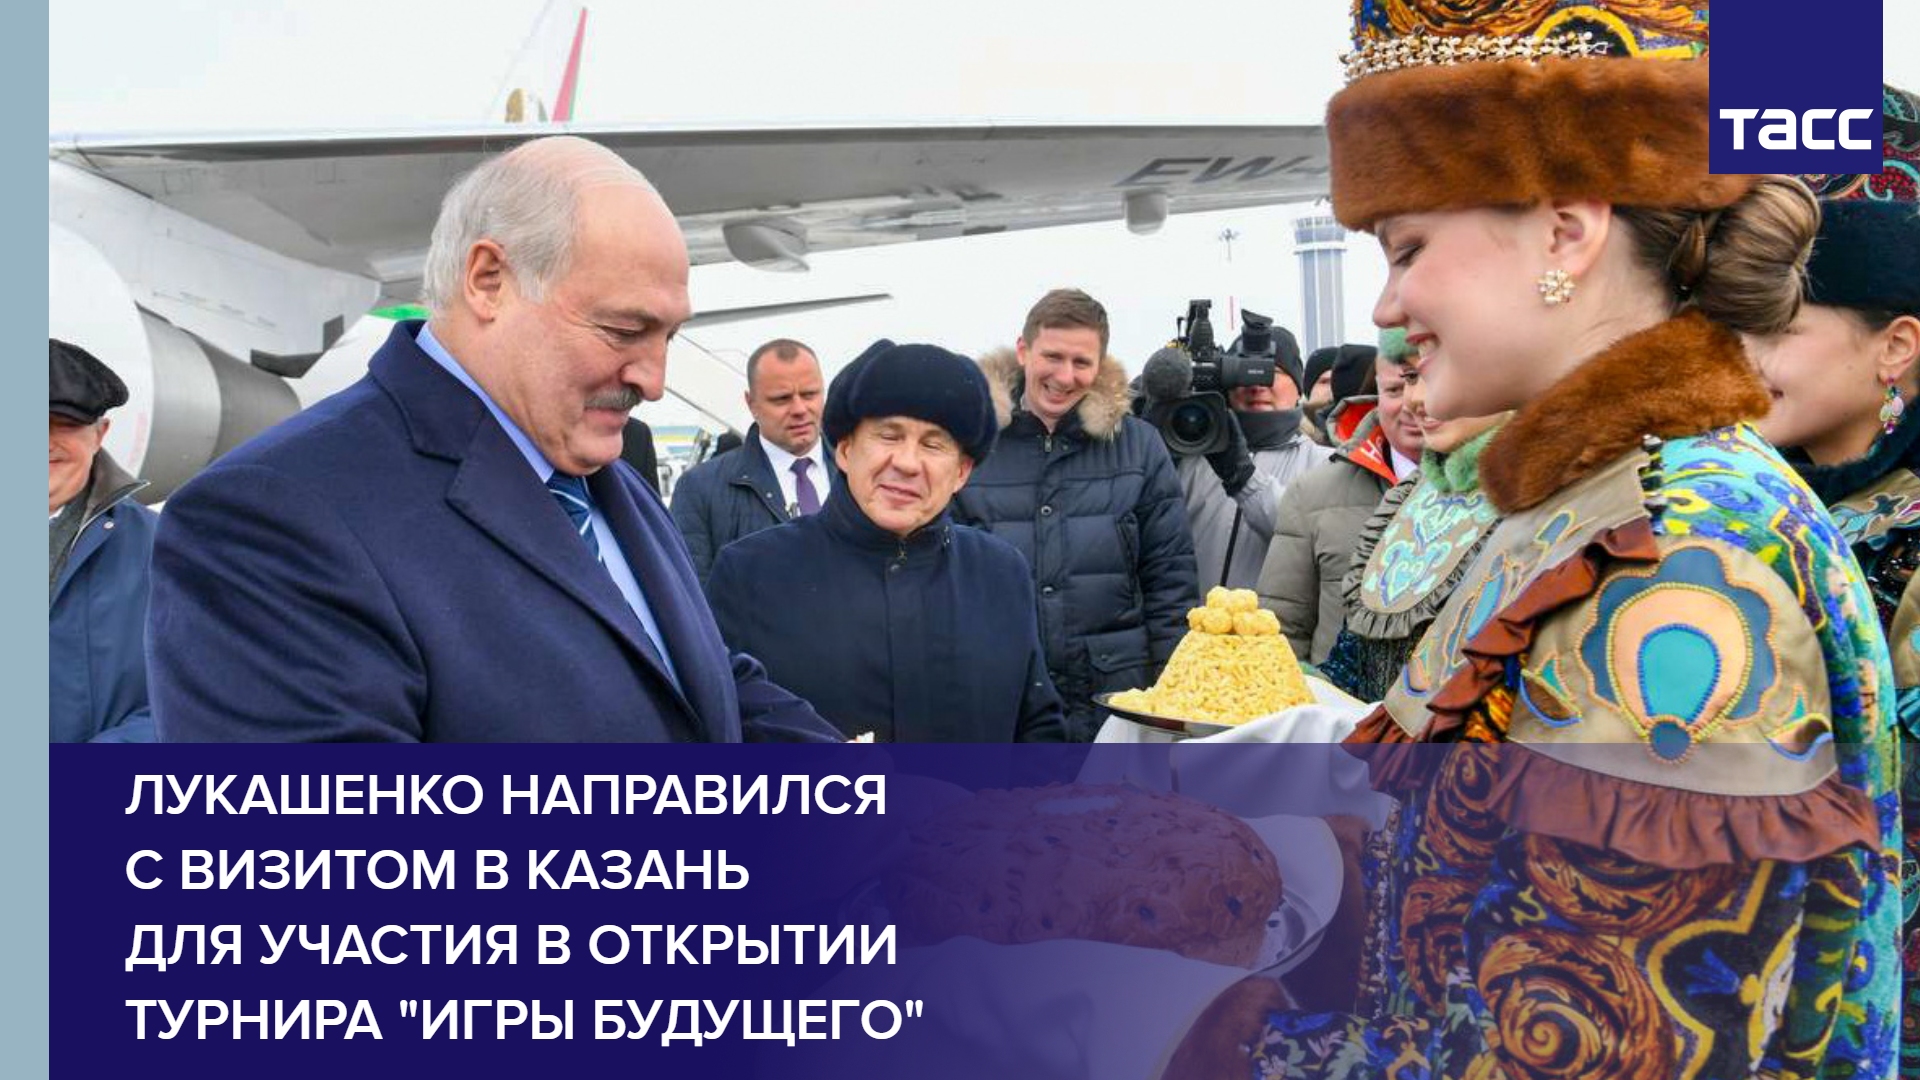 Лукашенко направился с визитом в Казань для участия в открытии турнира "Игры будущего" #shorts